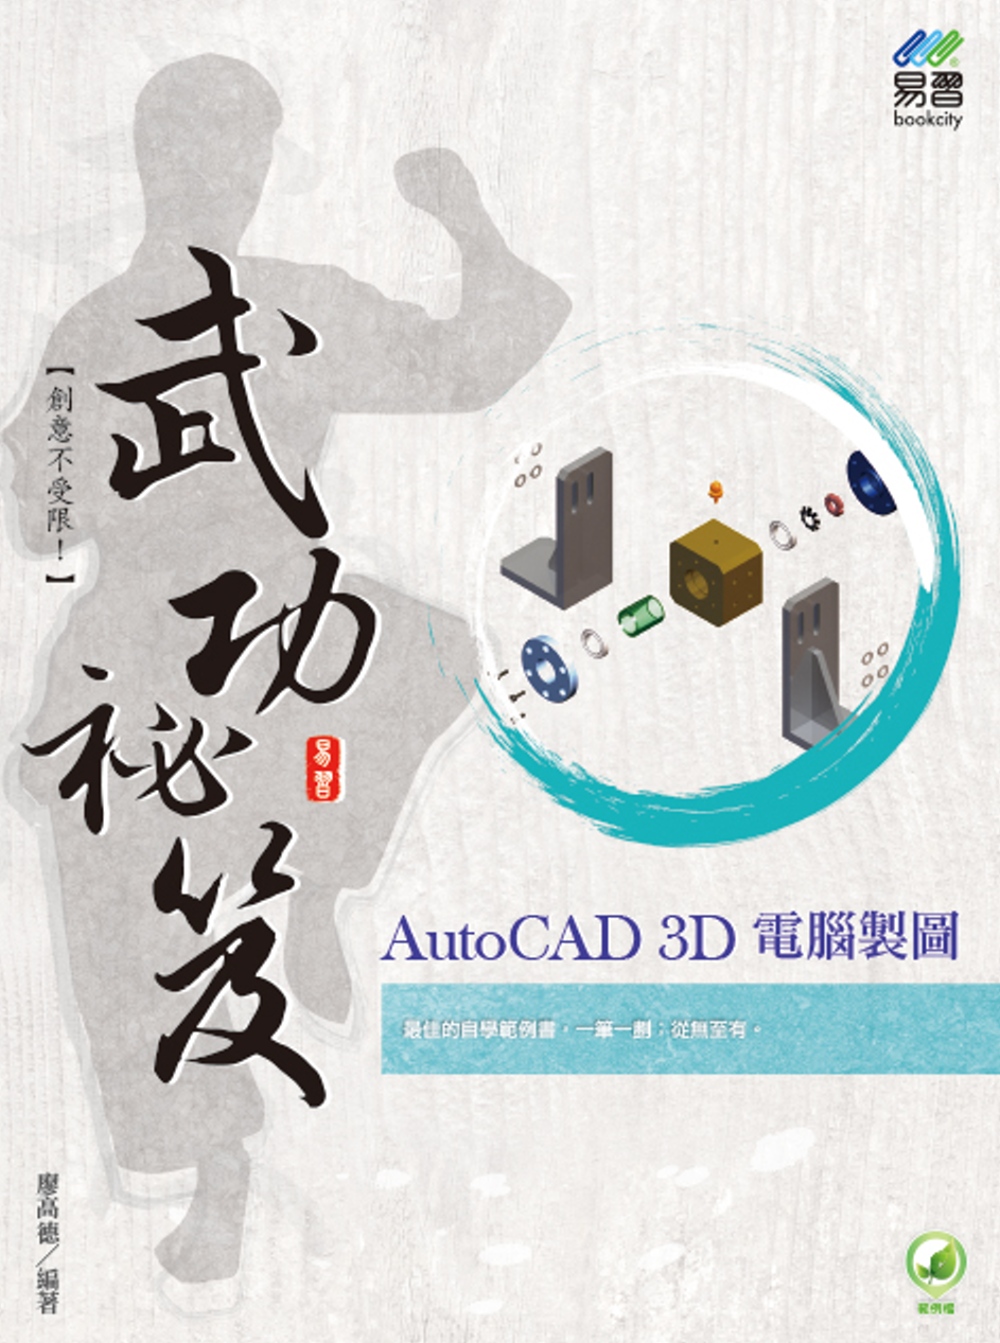 AutoCAD 3D 電腦製圖 武功祕笈